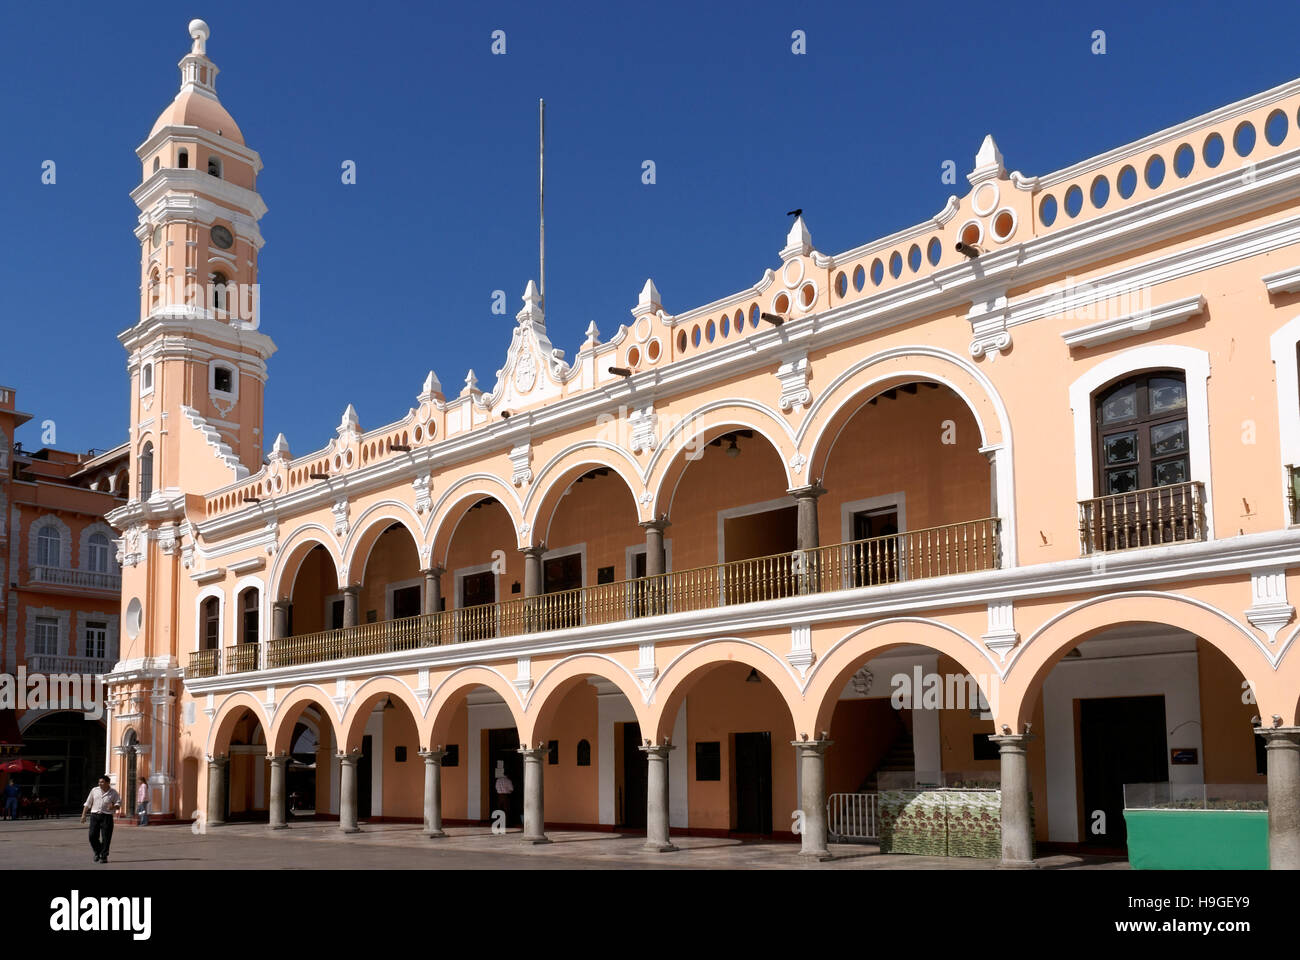 The Palacio Municipal or Municipal Palace on the Zocalo or Plaza de Armas in the city of Veracruz, Mexico Stock Photo